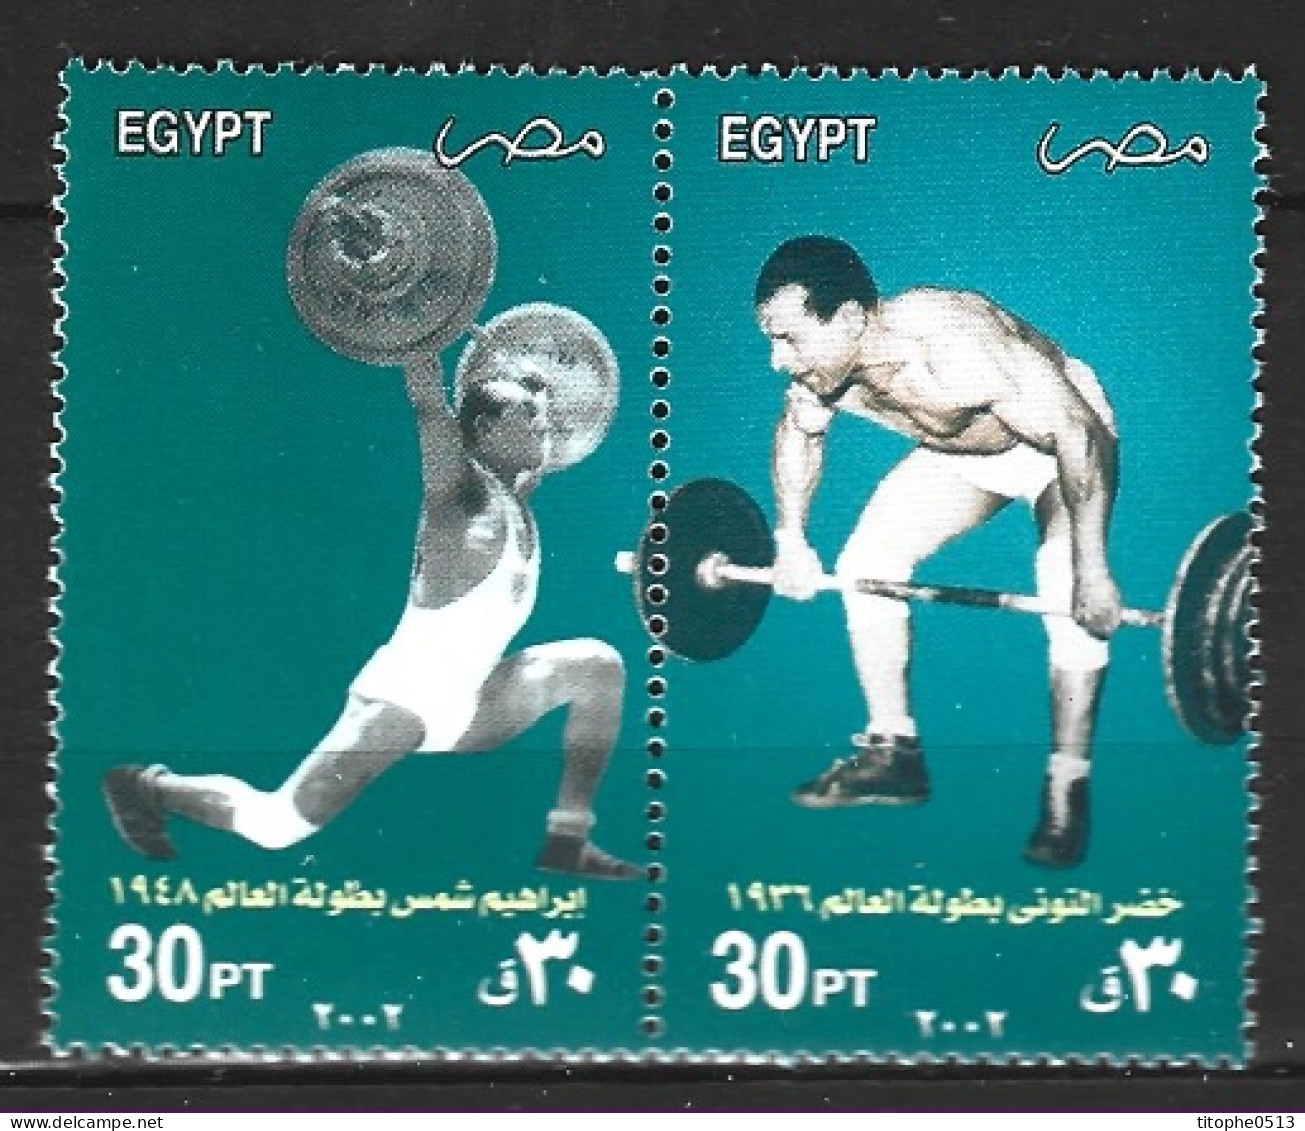 EGYPTE. N°1724-5 De 2002. Haltérophilie. - Weightlifting